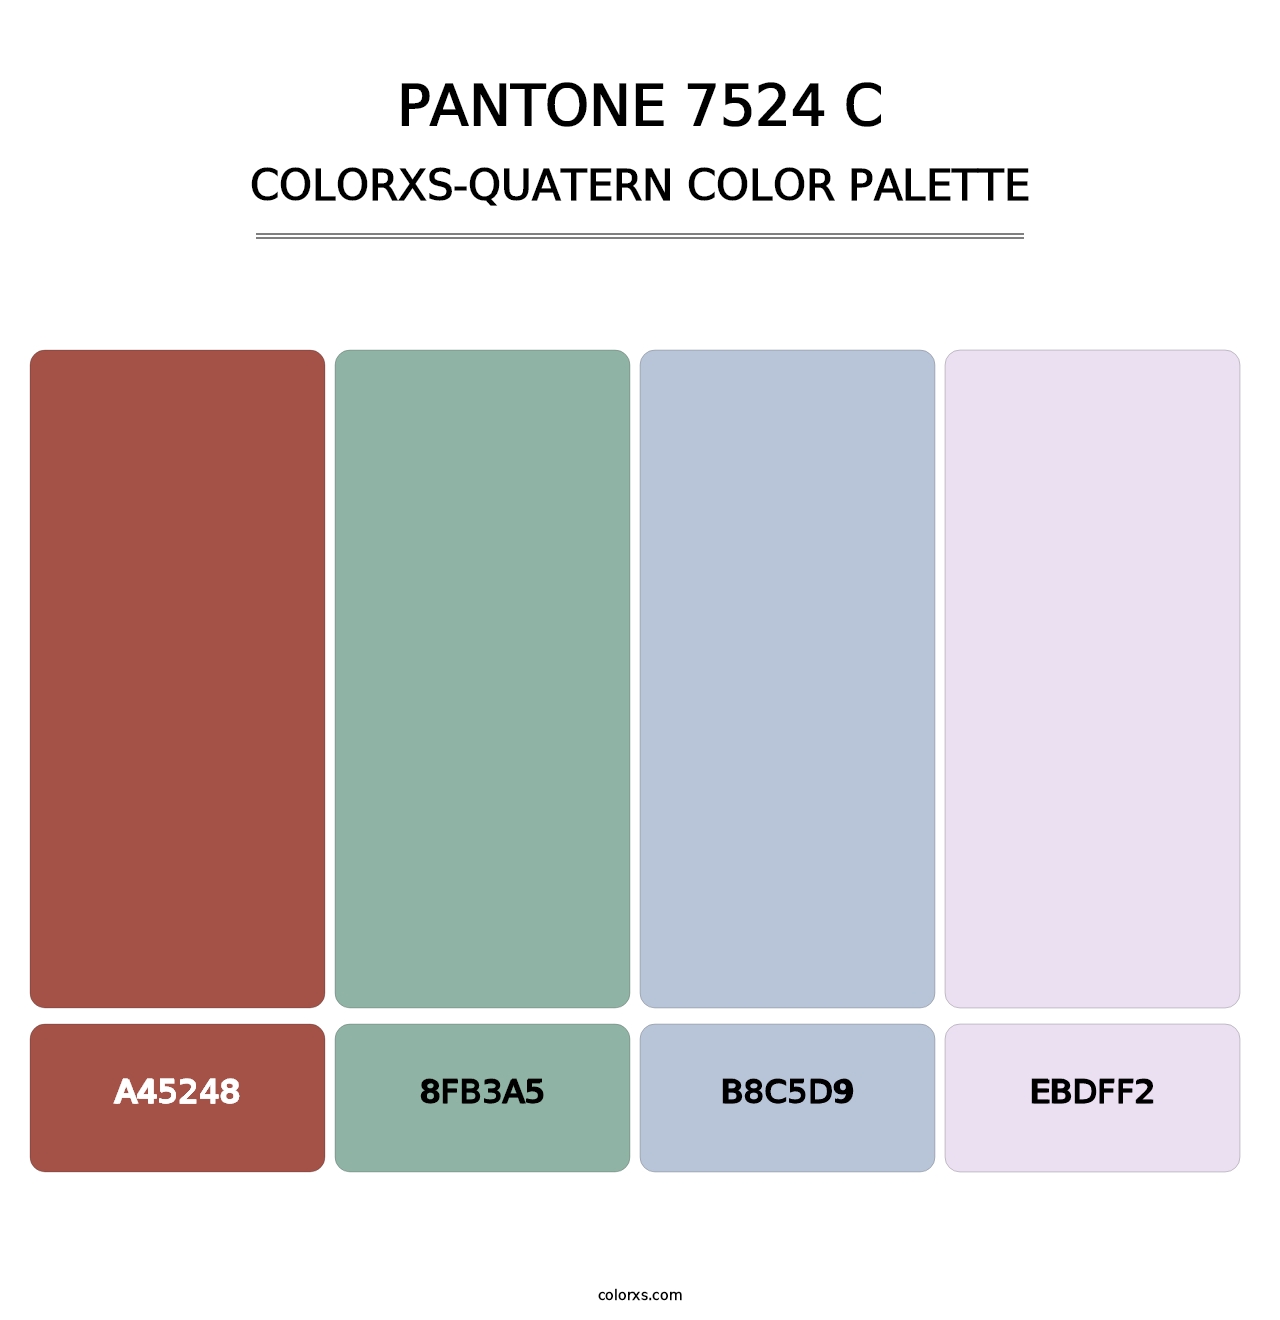 PANTONE 7524 C - Colorxs Quatern Palette